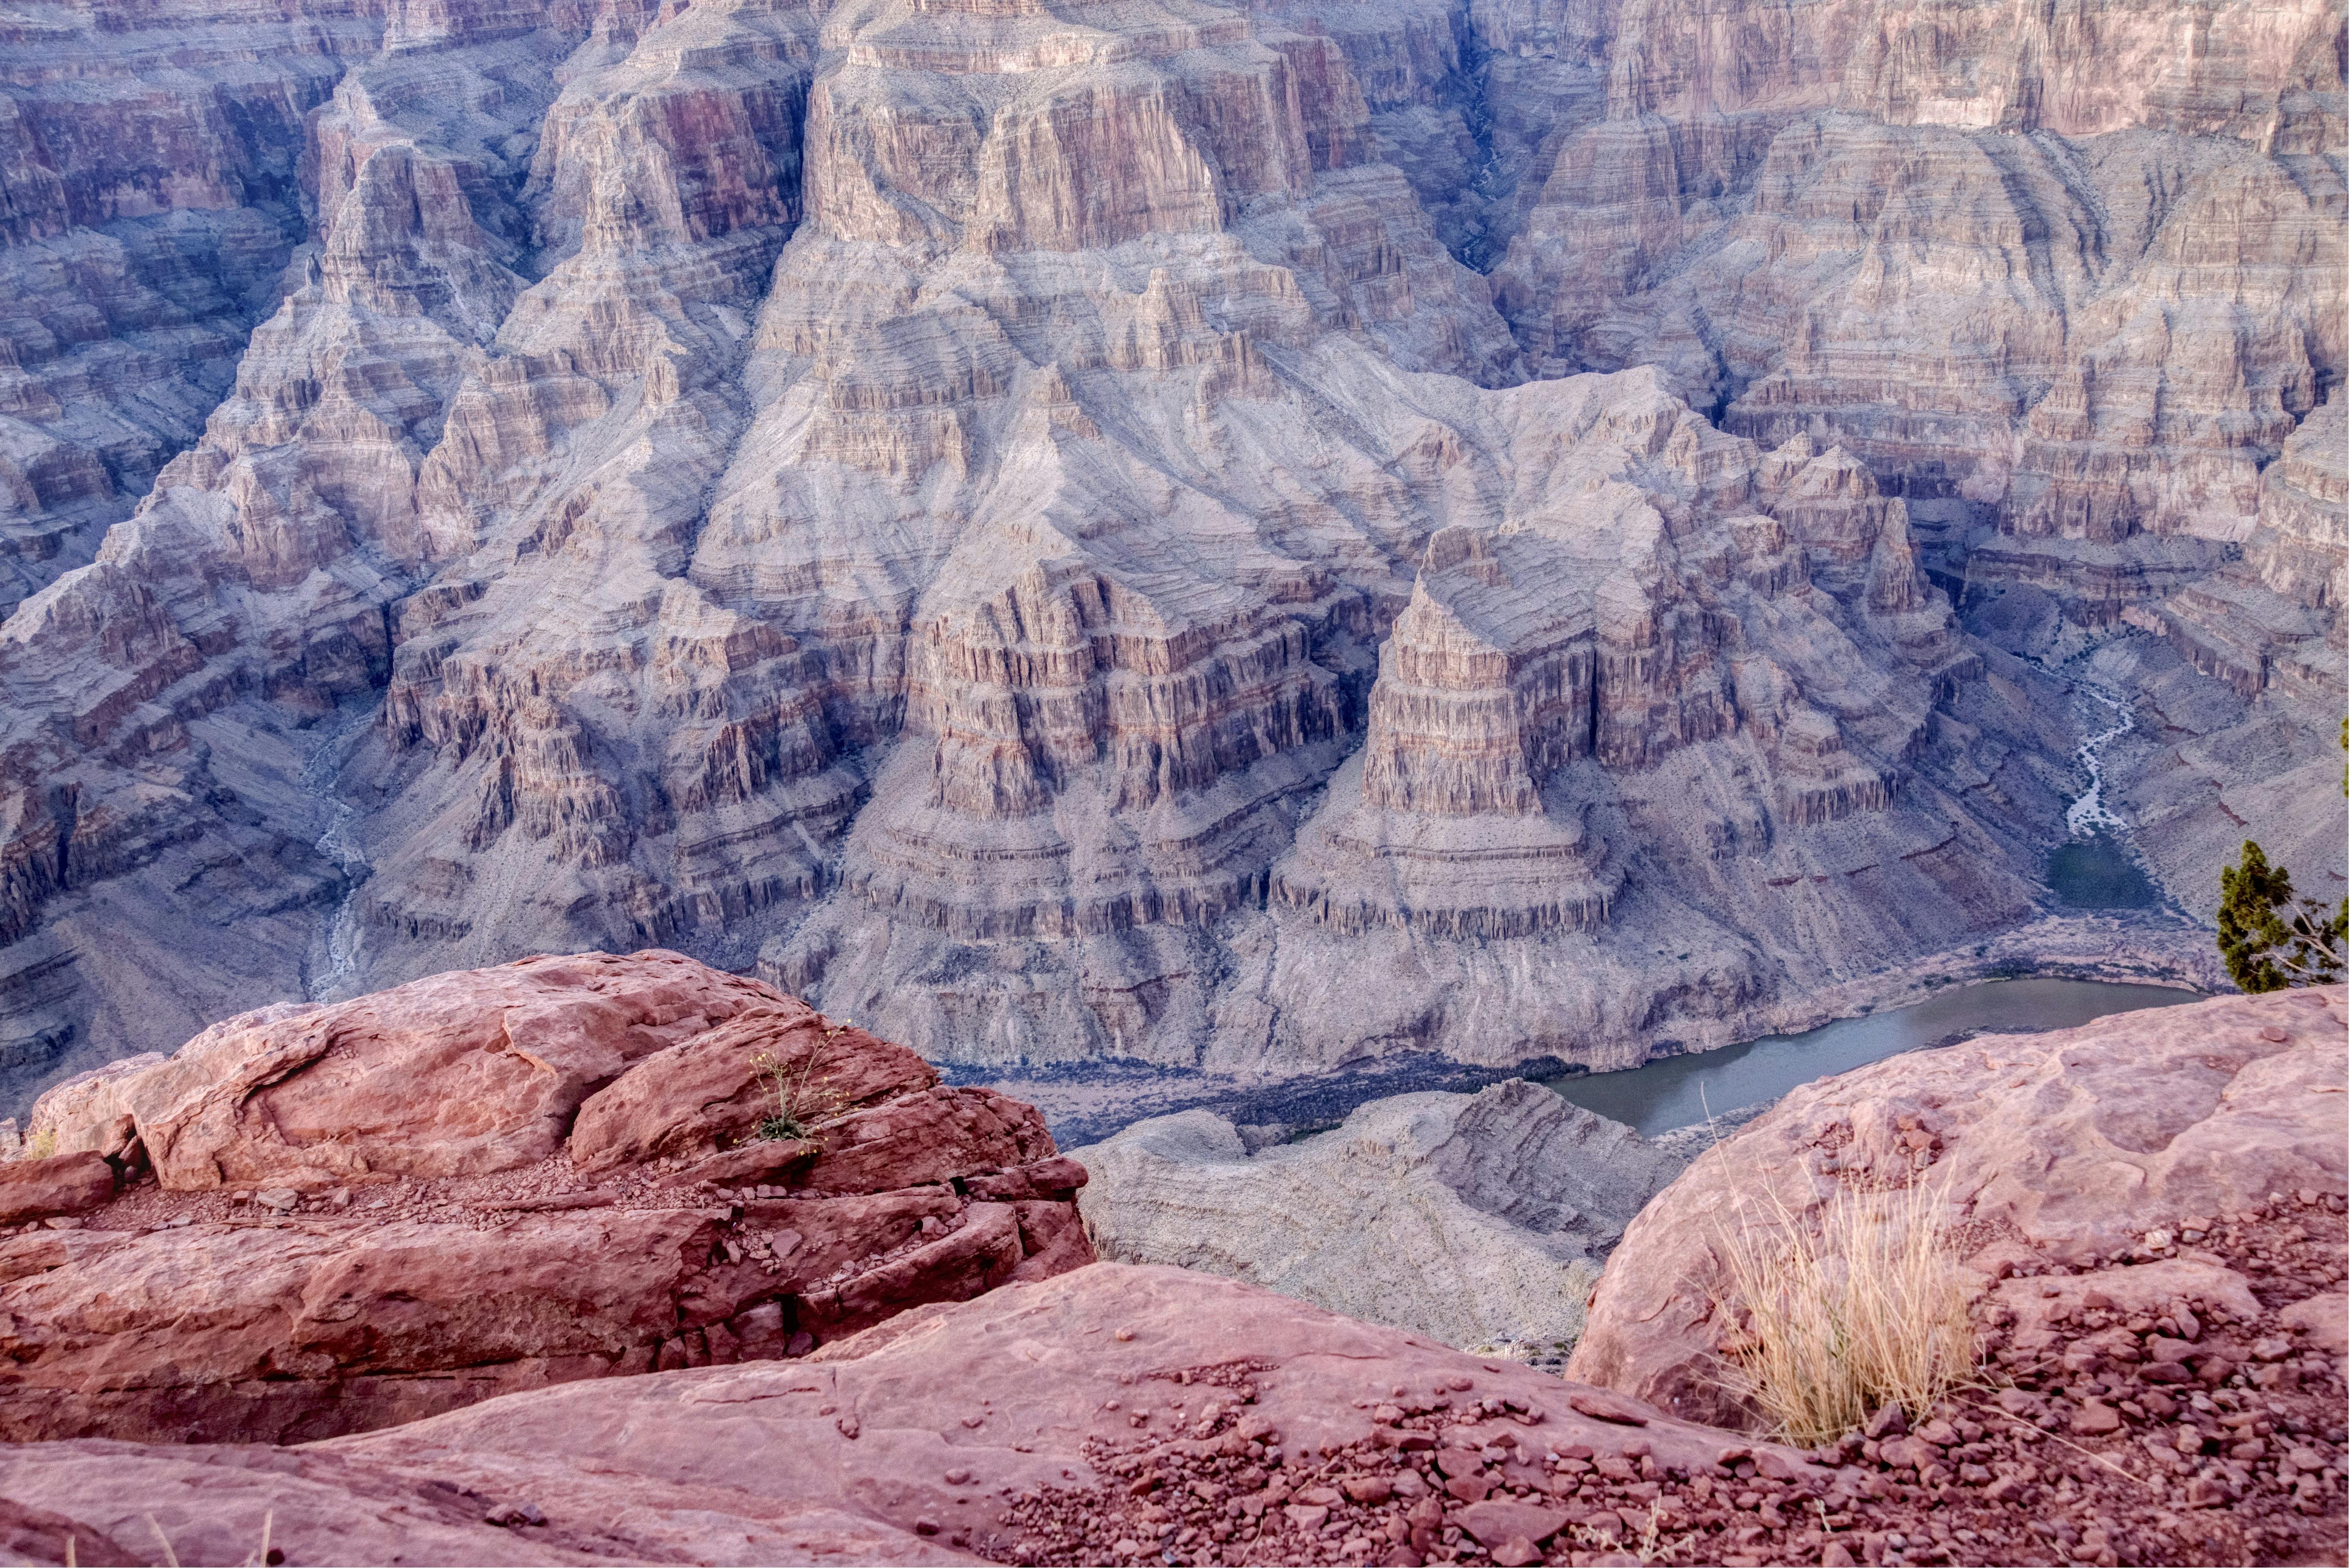 Eintritt für Selbstfahrer zum Grand Canyon West